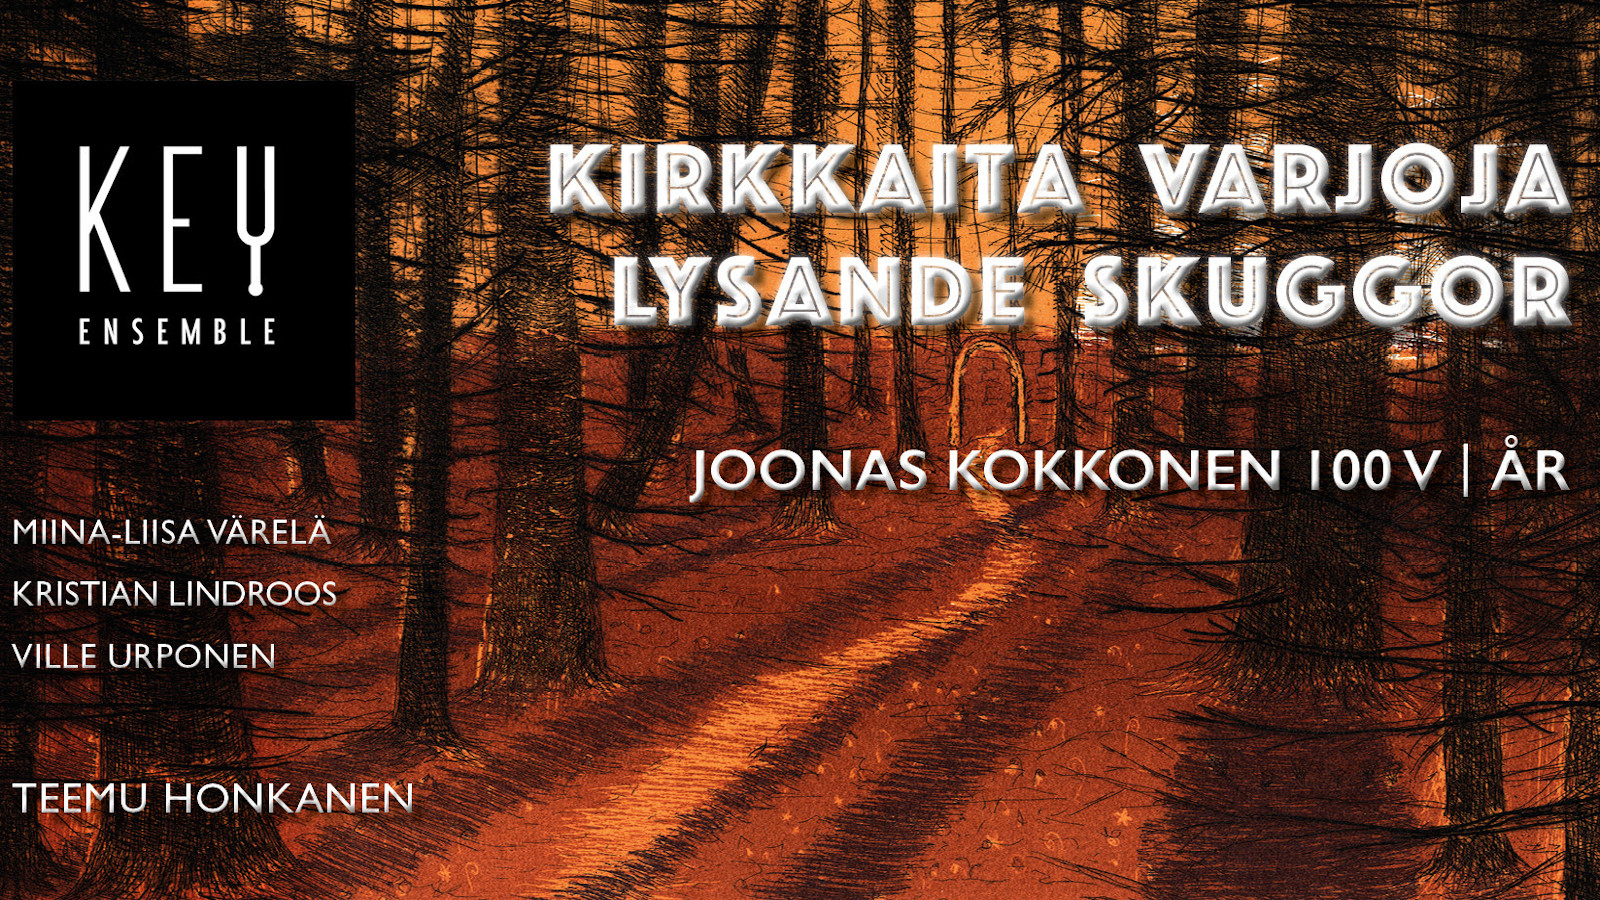 100-vuotta Joonas Kokkosen syntymästä järjestetyn konsertin juliste.